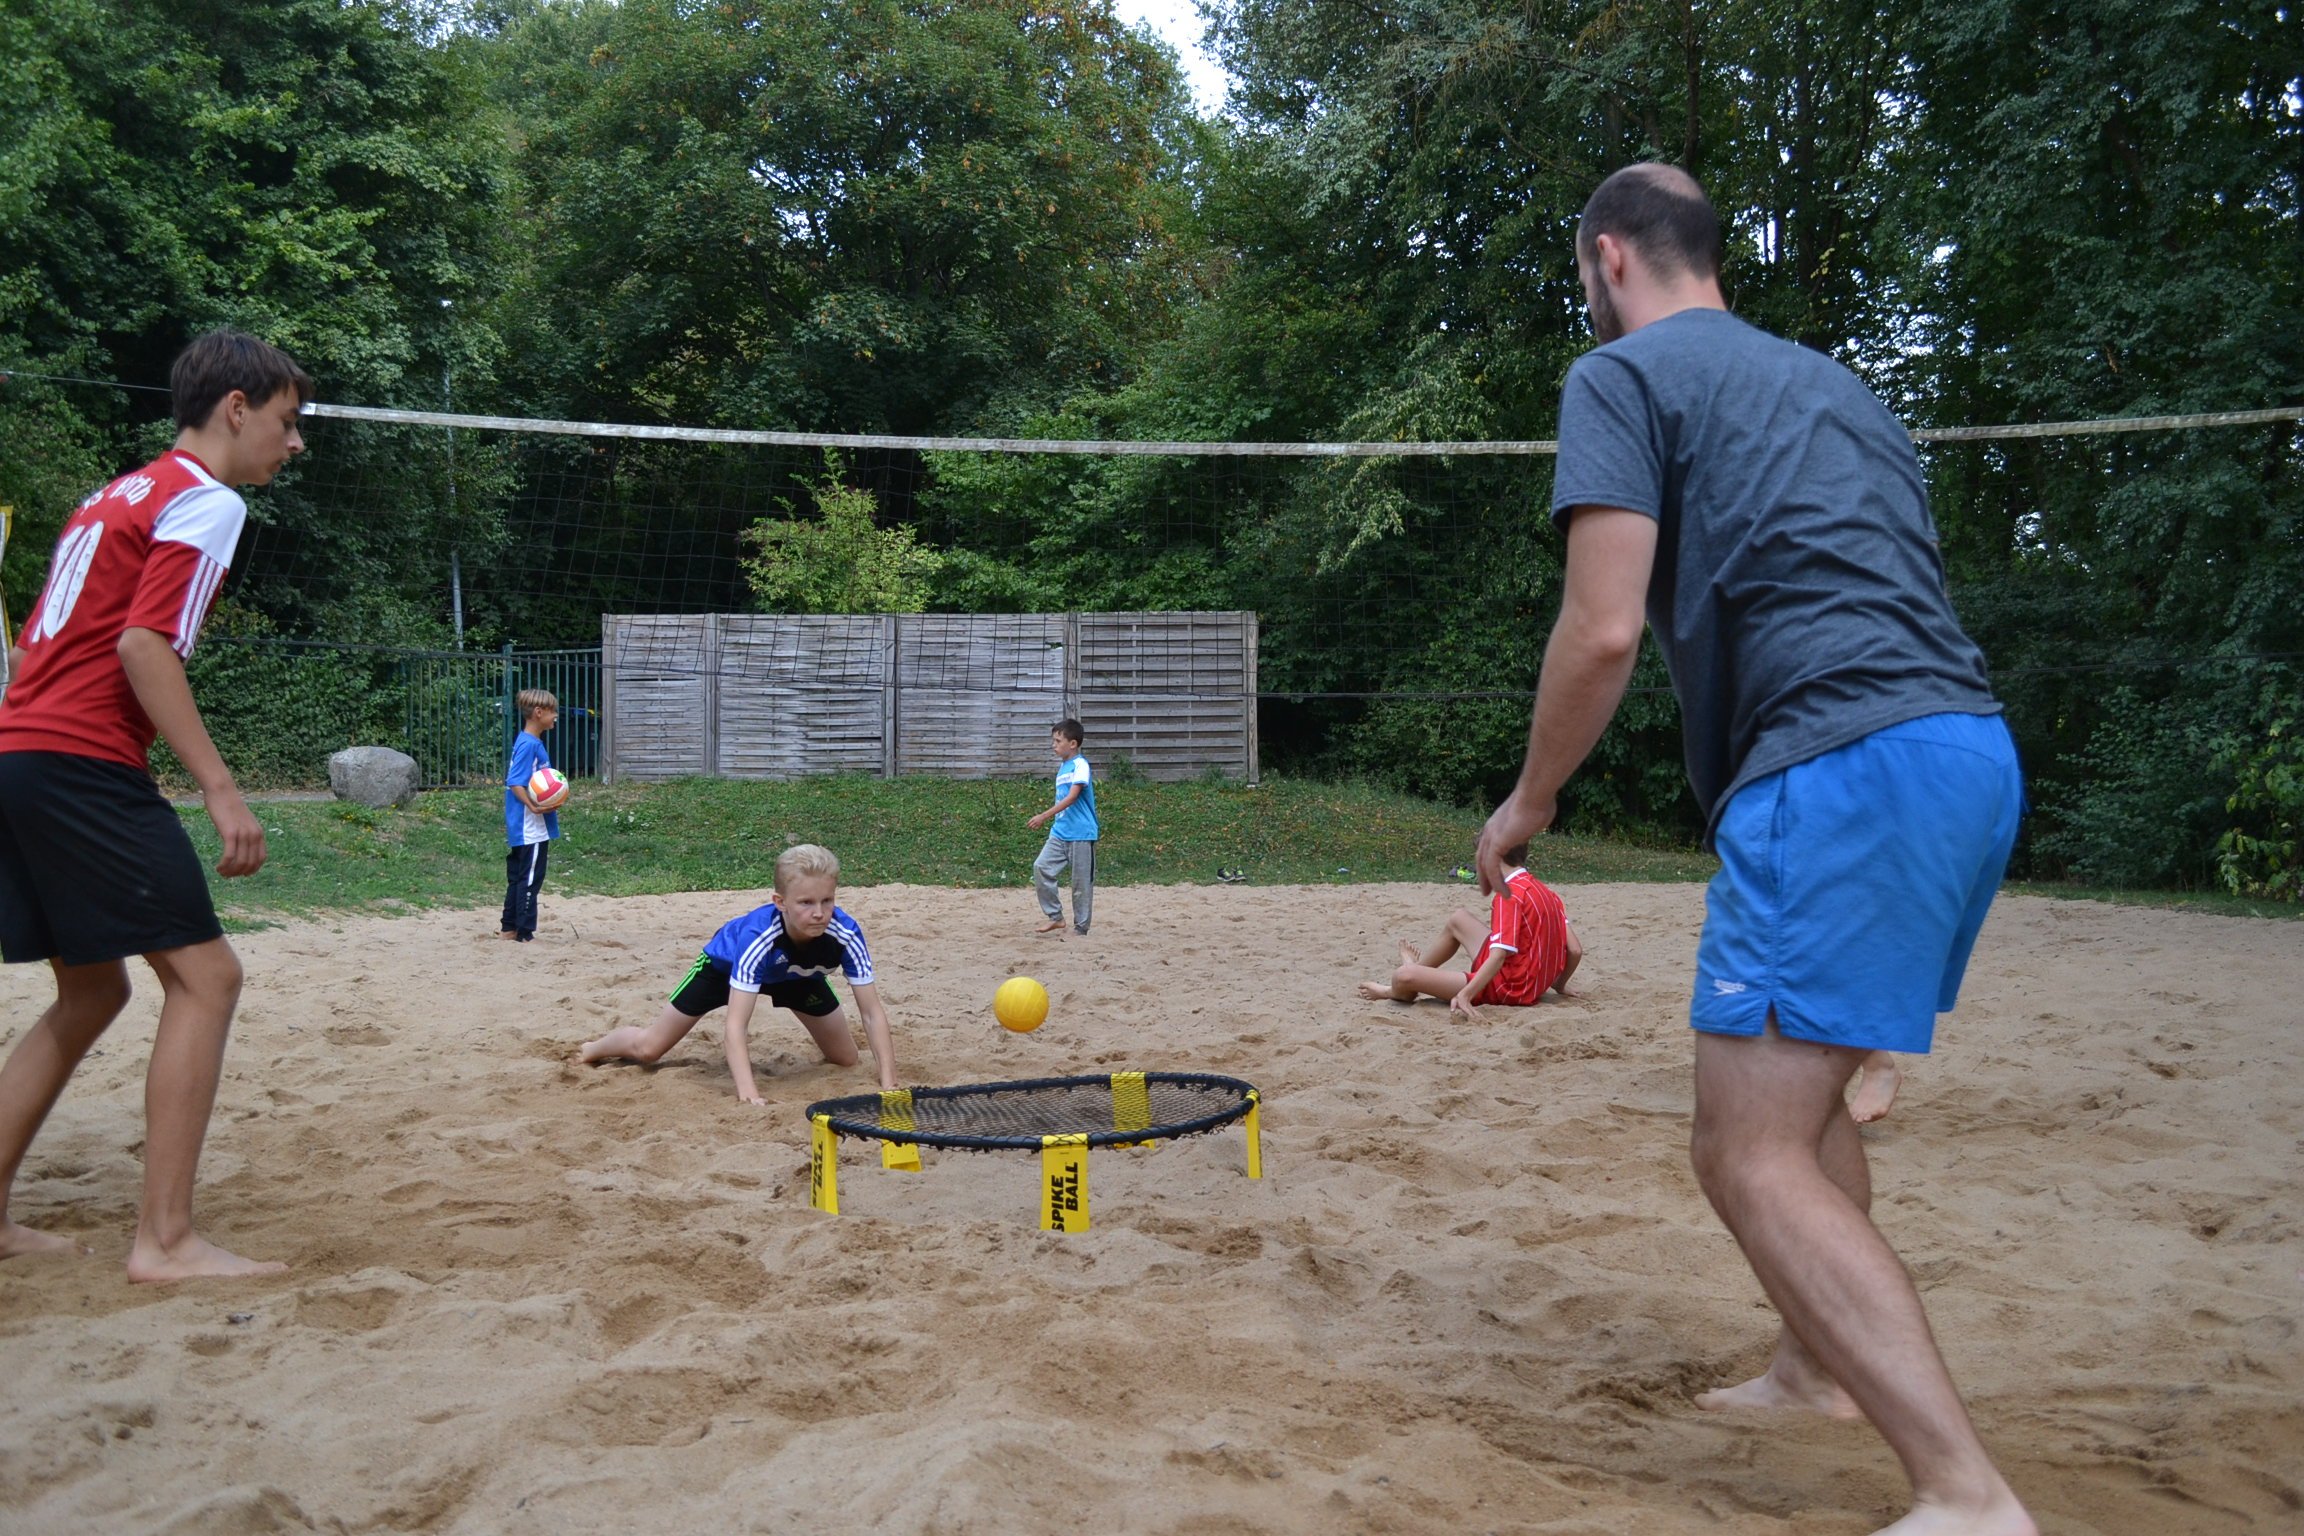 Jugendliche und ein Erwachsener beim Spikeball-Spielen im Sand.